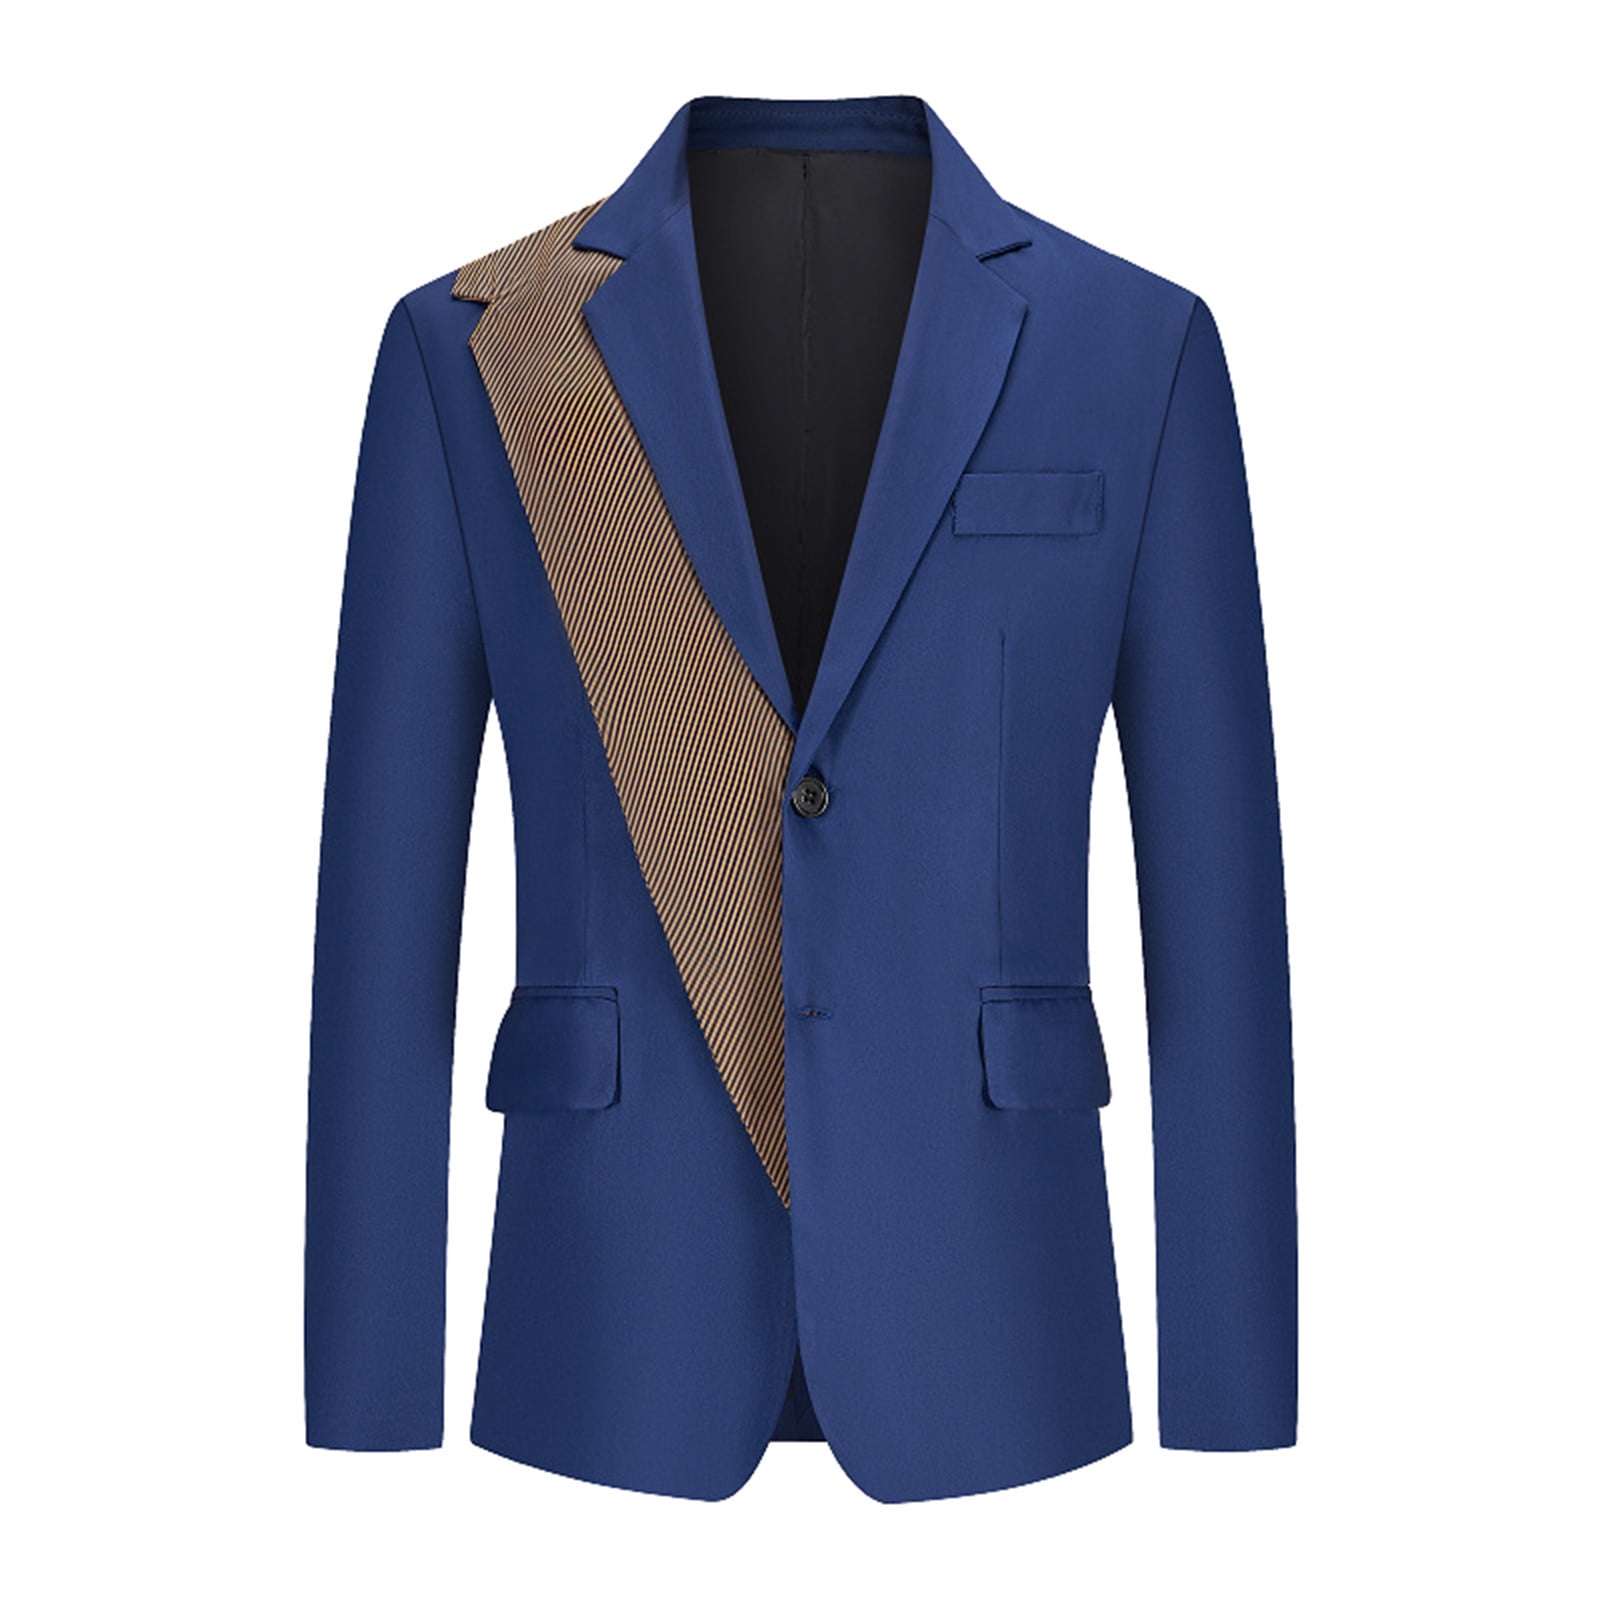 Entyinea Mens Suit Jacket Regular Fit Business Wedding Party Jacket Suit Coat L Blue c2ad33ce 8a28 47c5 9fc8 f4f6195cec2d.104c2e1d75d7ba1b68640df1d916cf4c